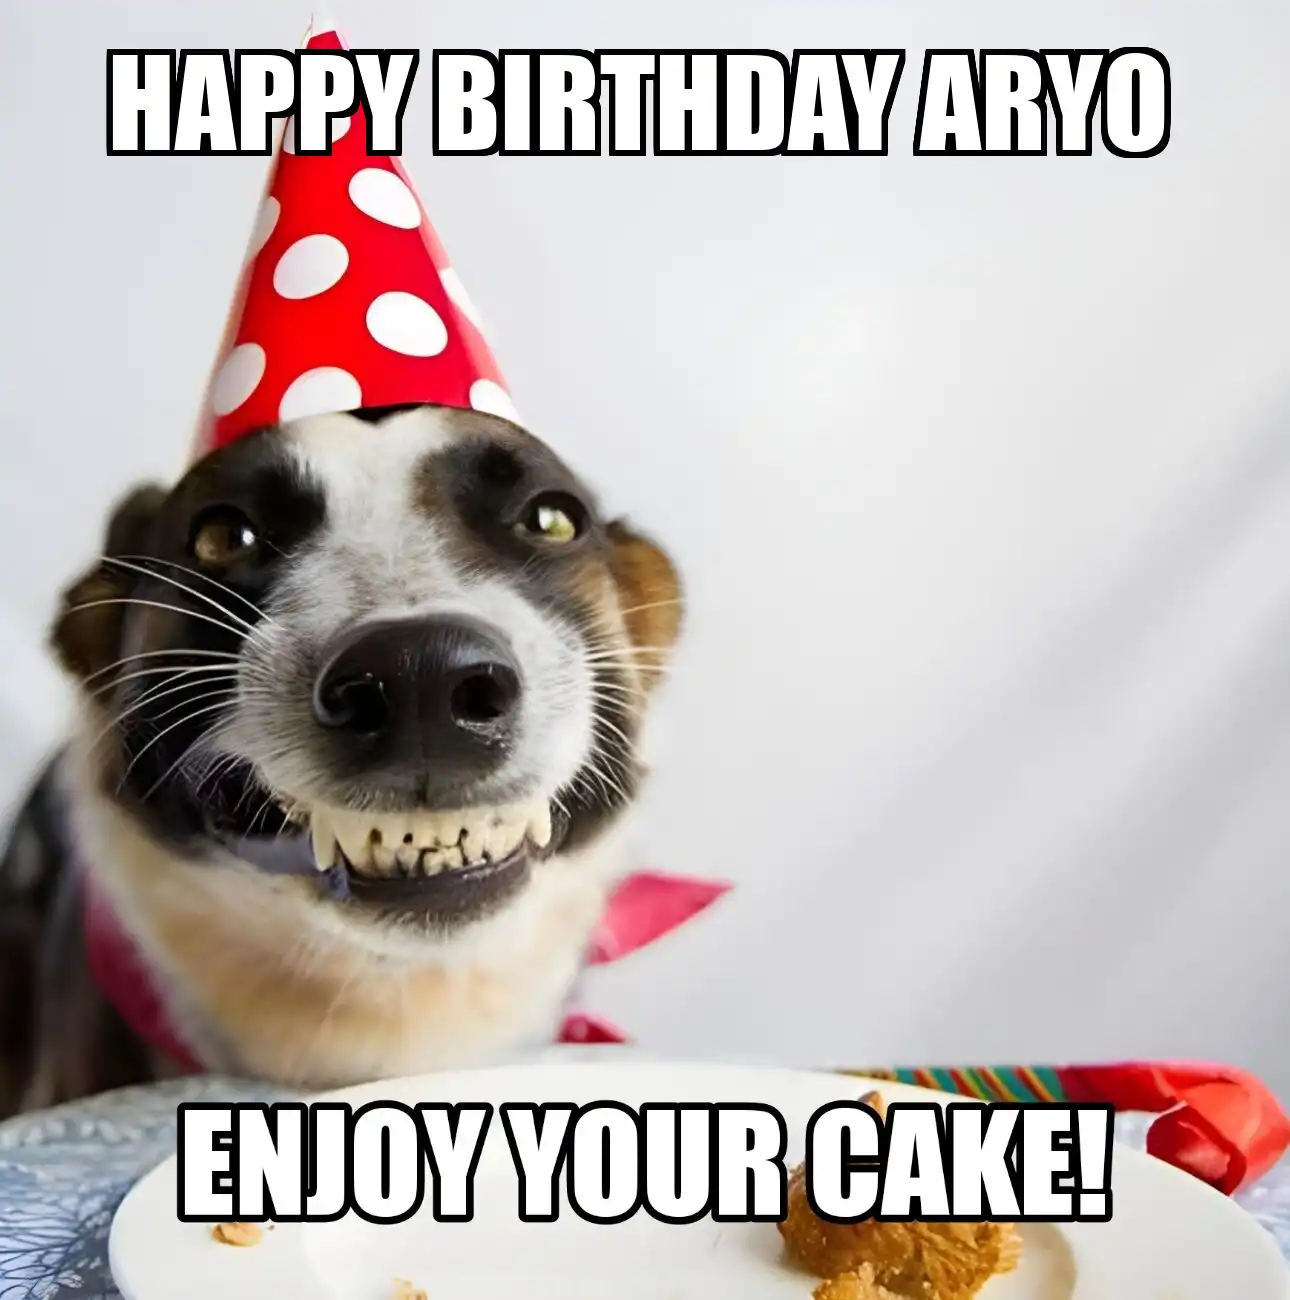 Happy Birthday Aryo Enjoy Your Cake Dog Meme